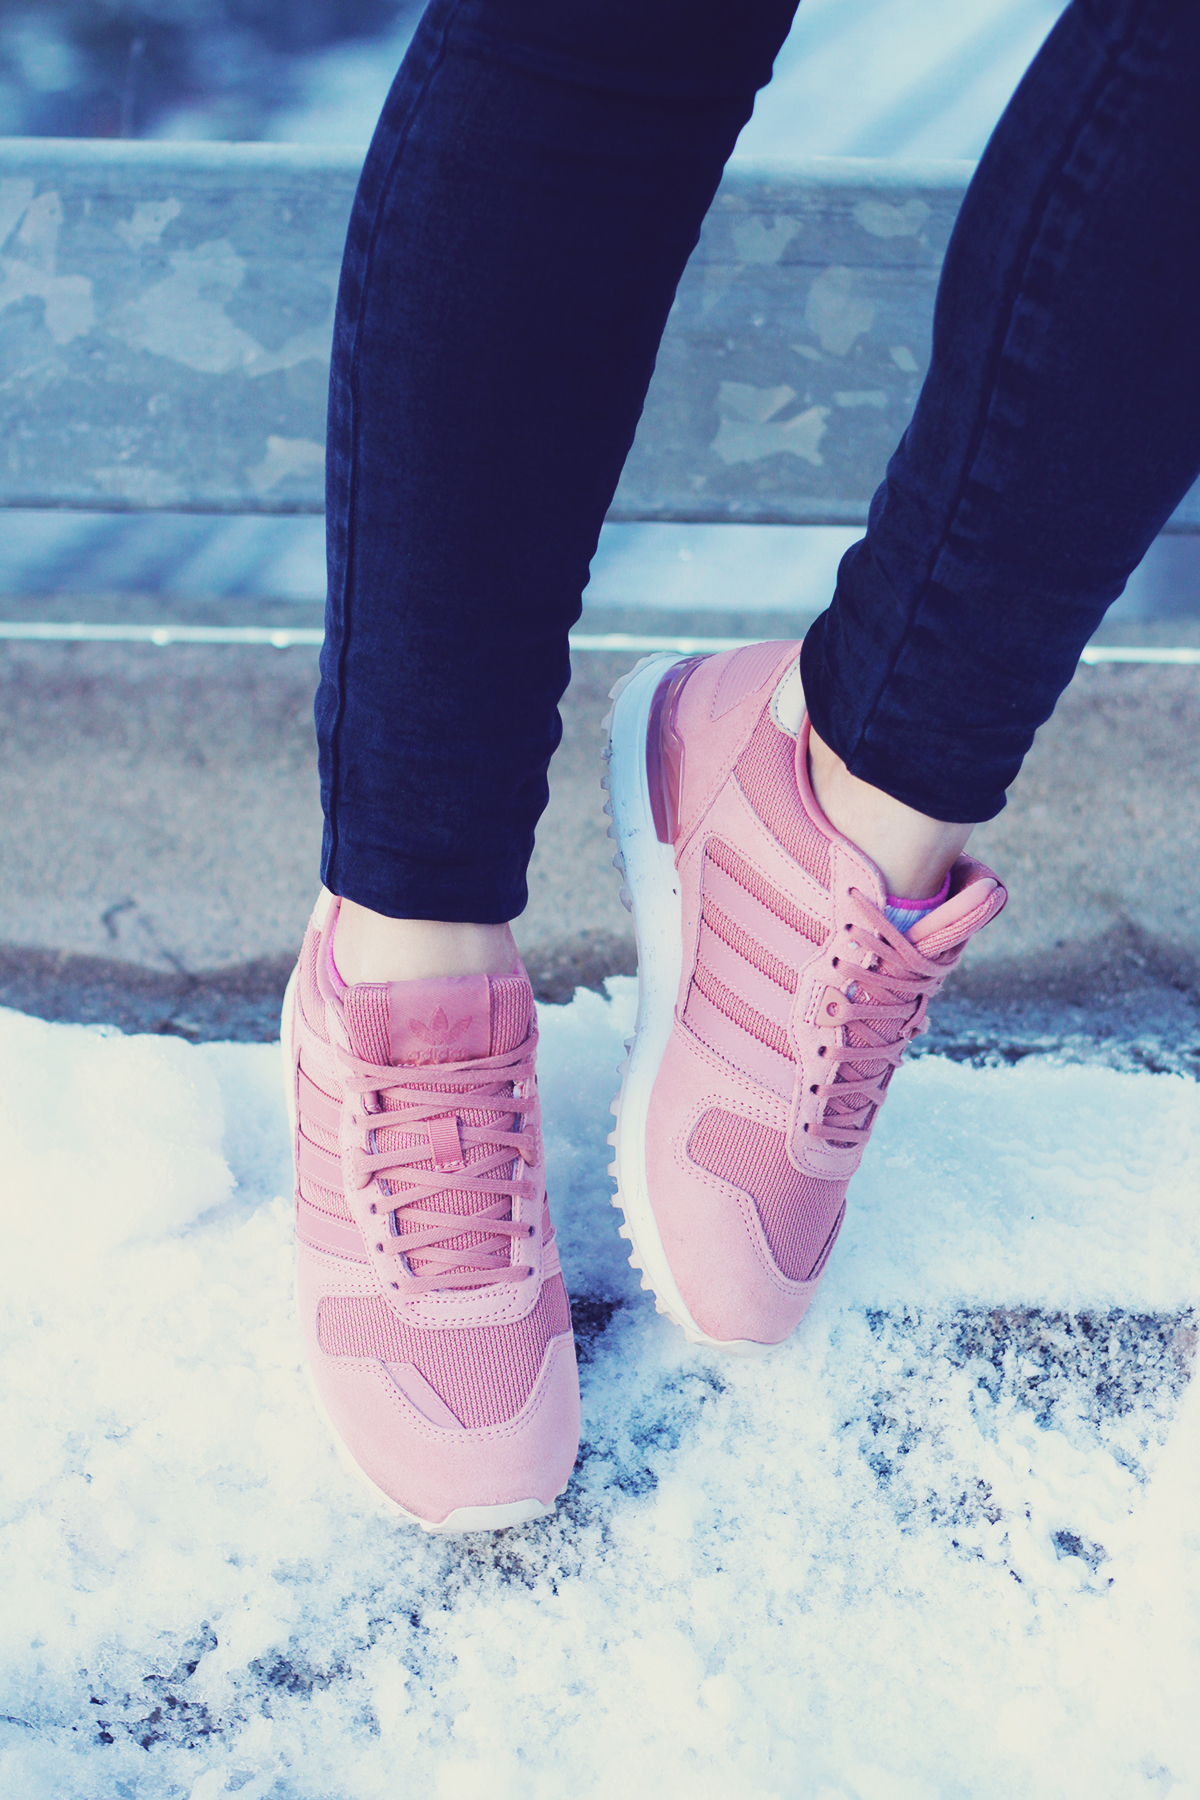 winter fashion, pink adidas originals, jeans, urban landscape, Vienna, snow